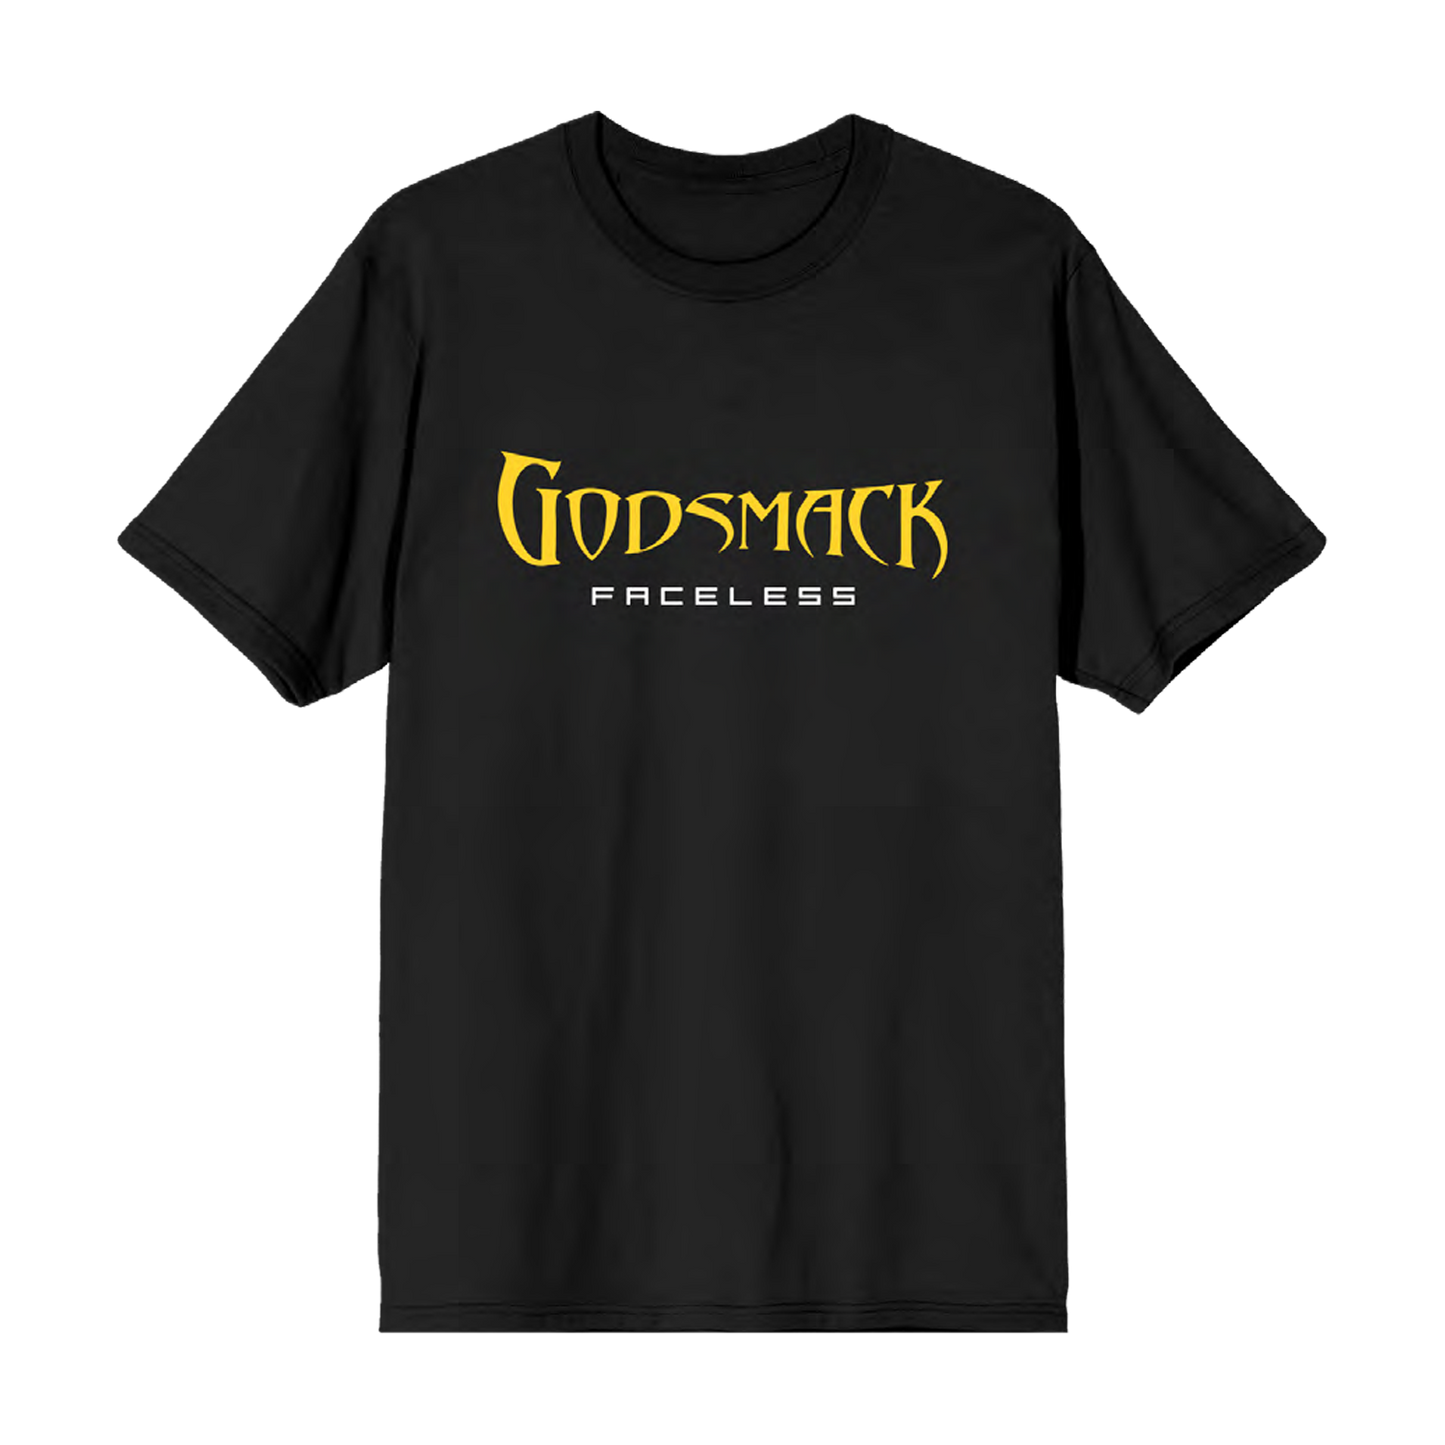 Godsmack Faceless Tee (PRE-ORDER)